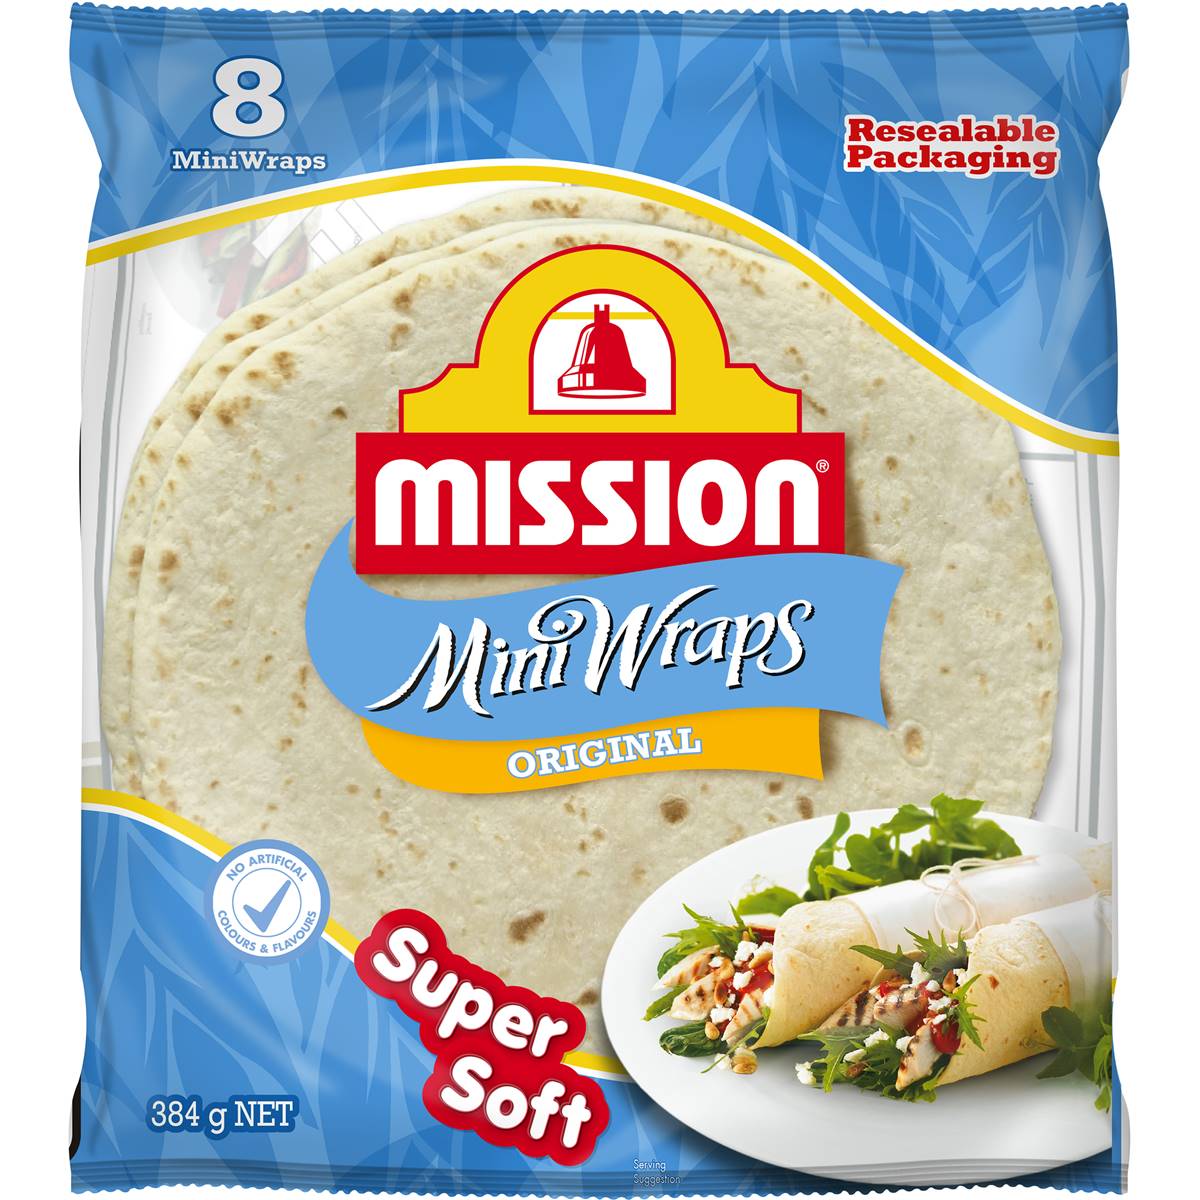 Calories in Mission Wraps Mini Original